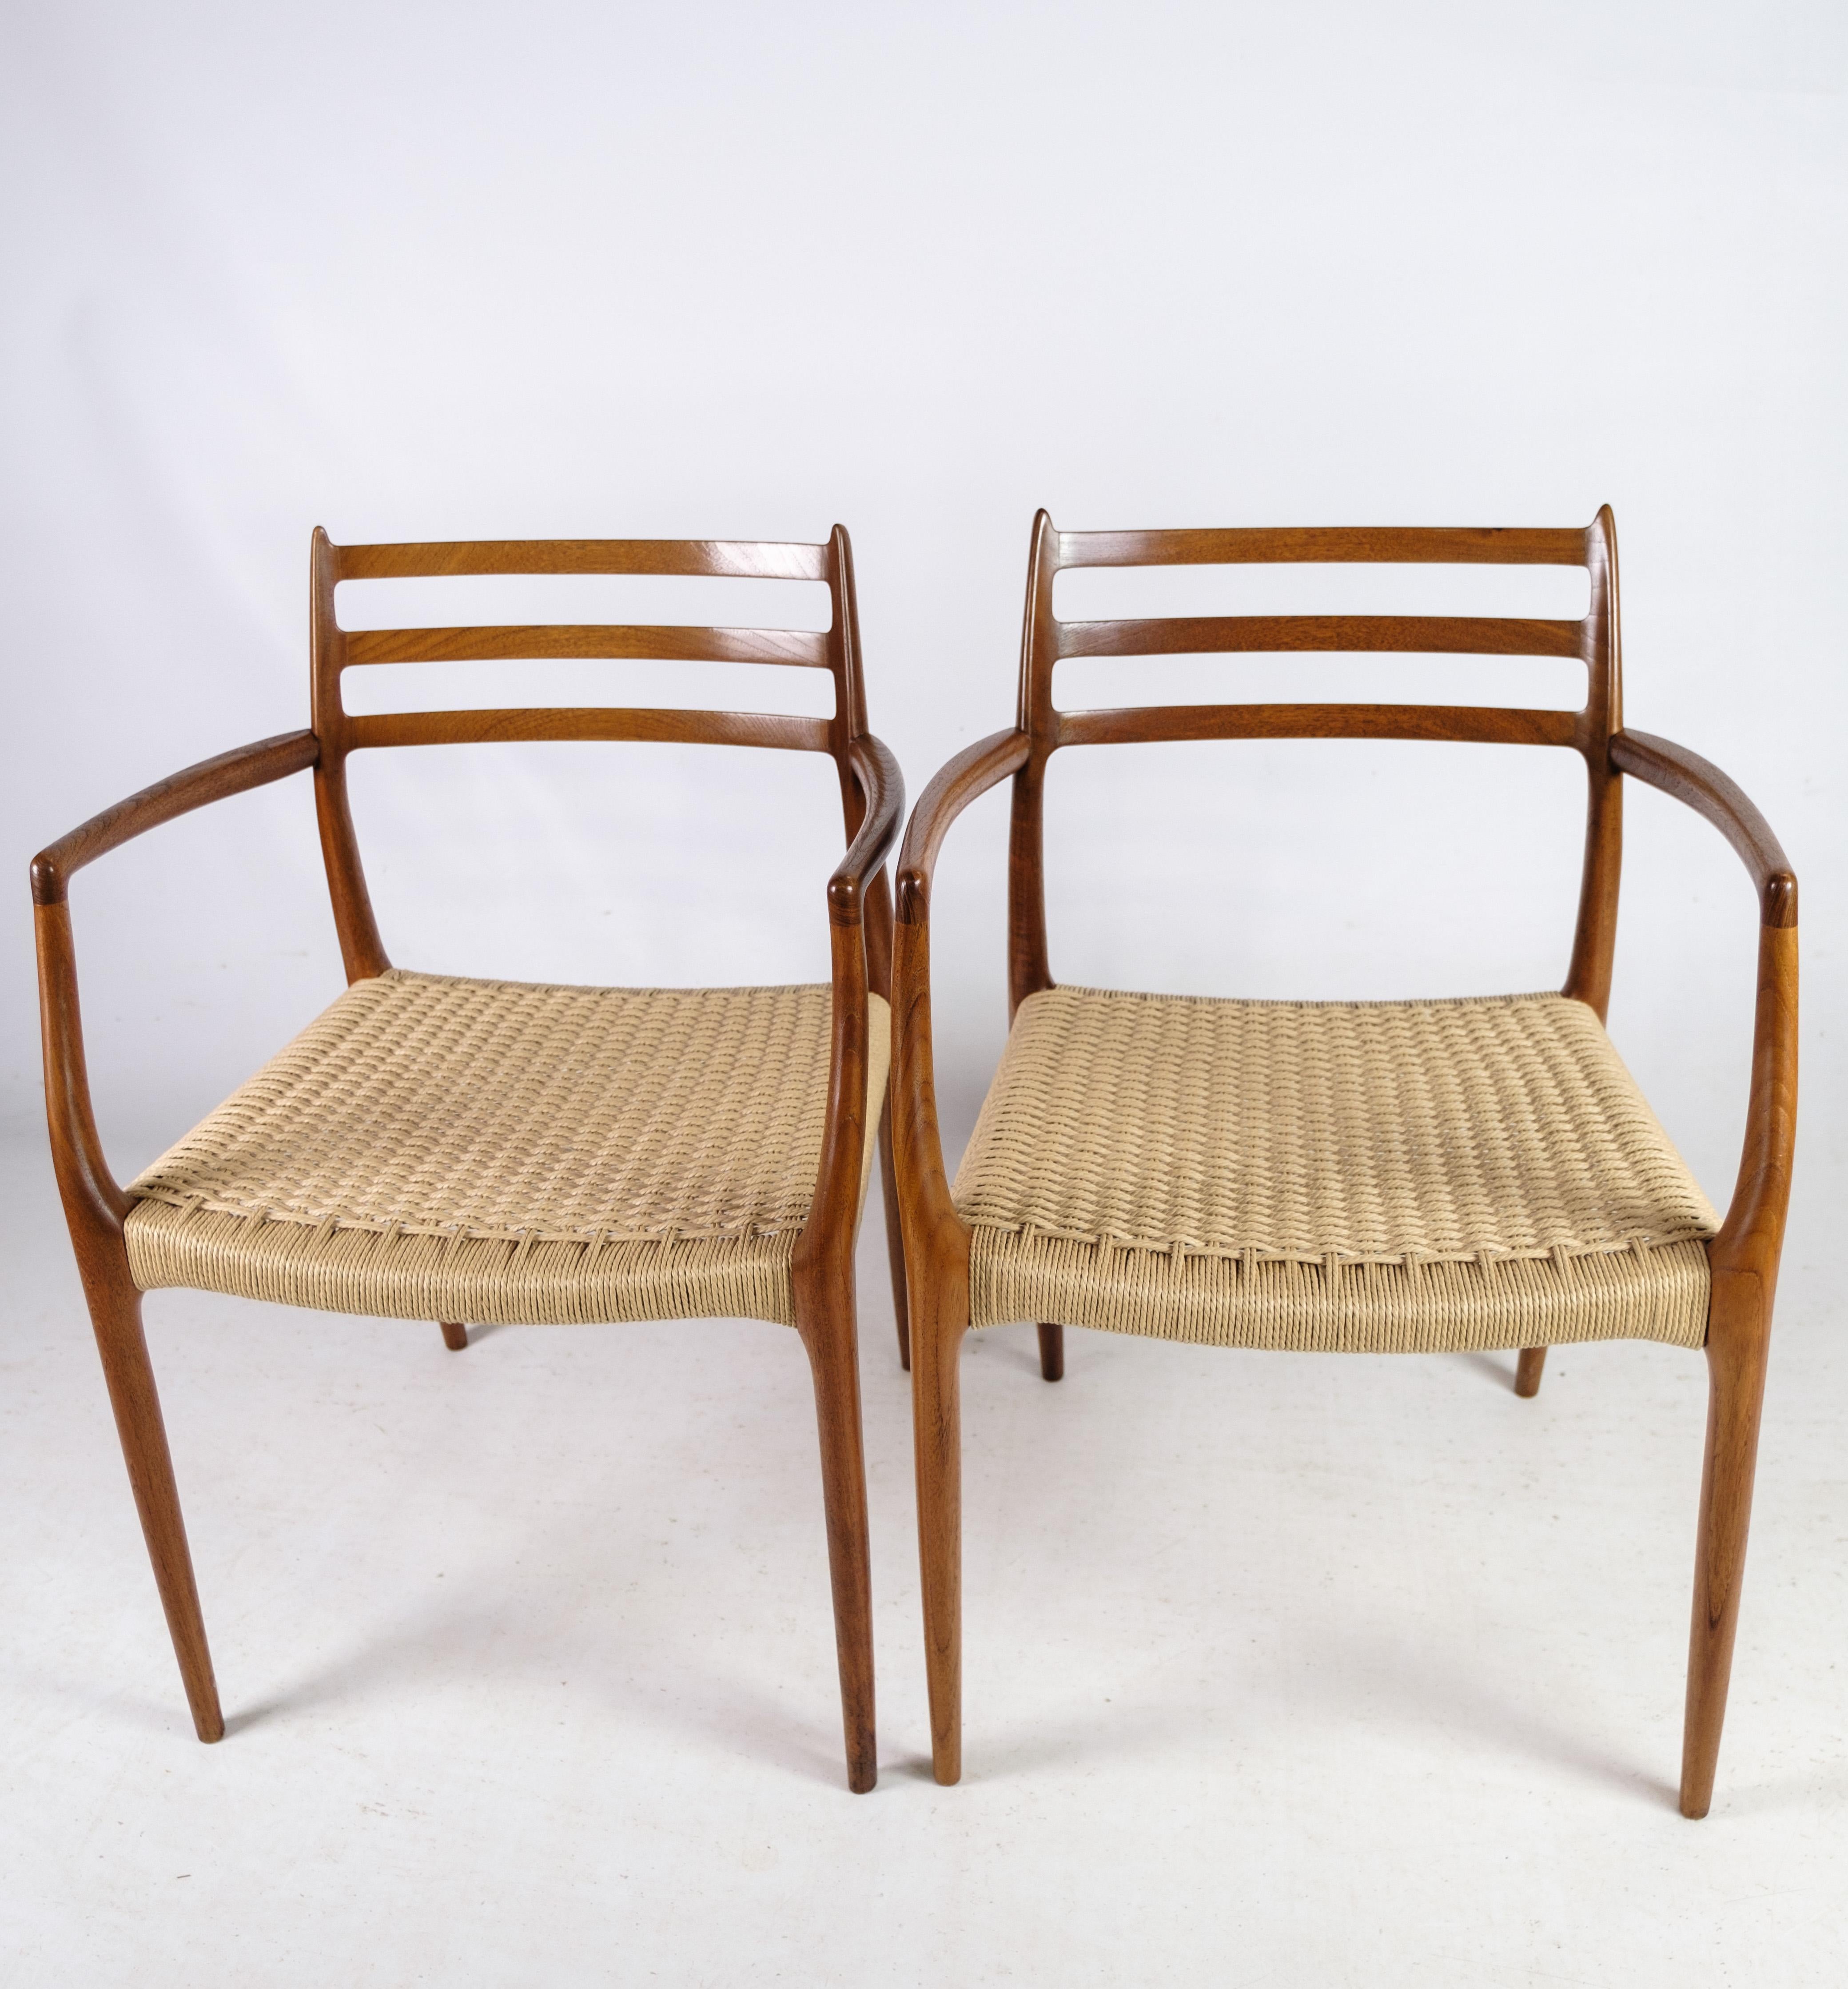 Cet ensemble de deux fauteuils, modèle NO 62, conçu par N.O. Møller en 1962, est une découverte rare et exquise. Fabriqué à I.L.A. Møllers Møbelfabrik, ces chaises témoignent de l'artisanat impeccable et de l'innovation en matière de design de